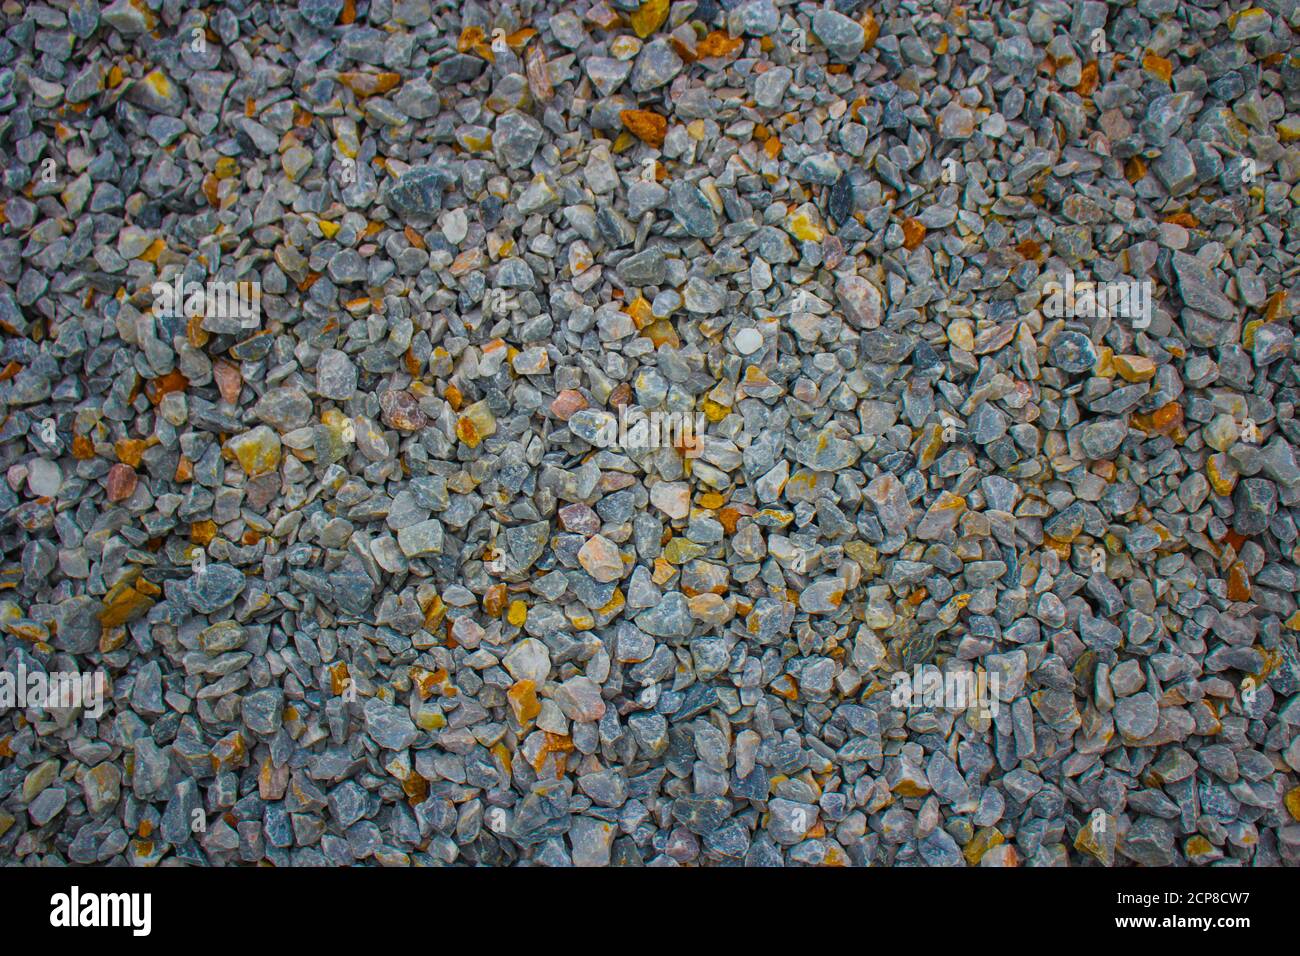 Galets colorés minéral, texture de pierre, fond de sol en gravier de pierre Banque D'Images